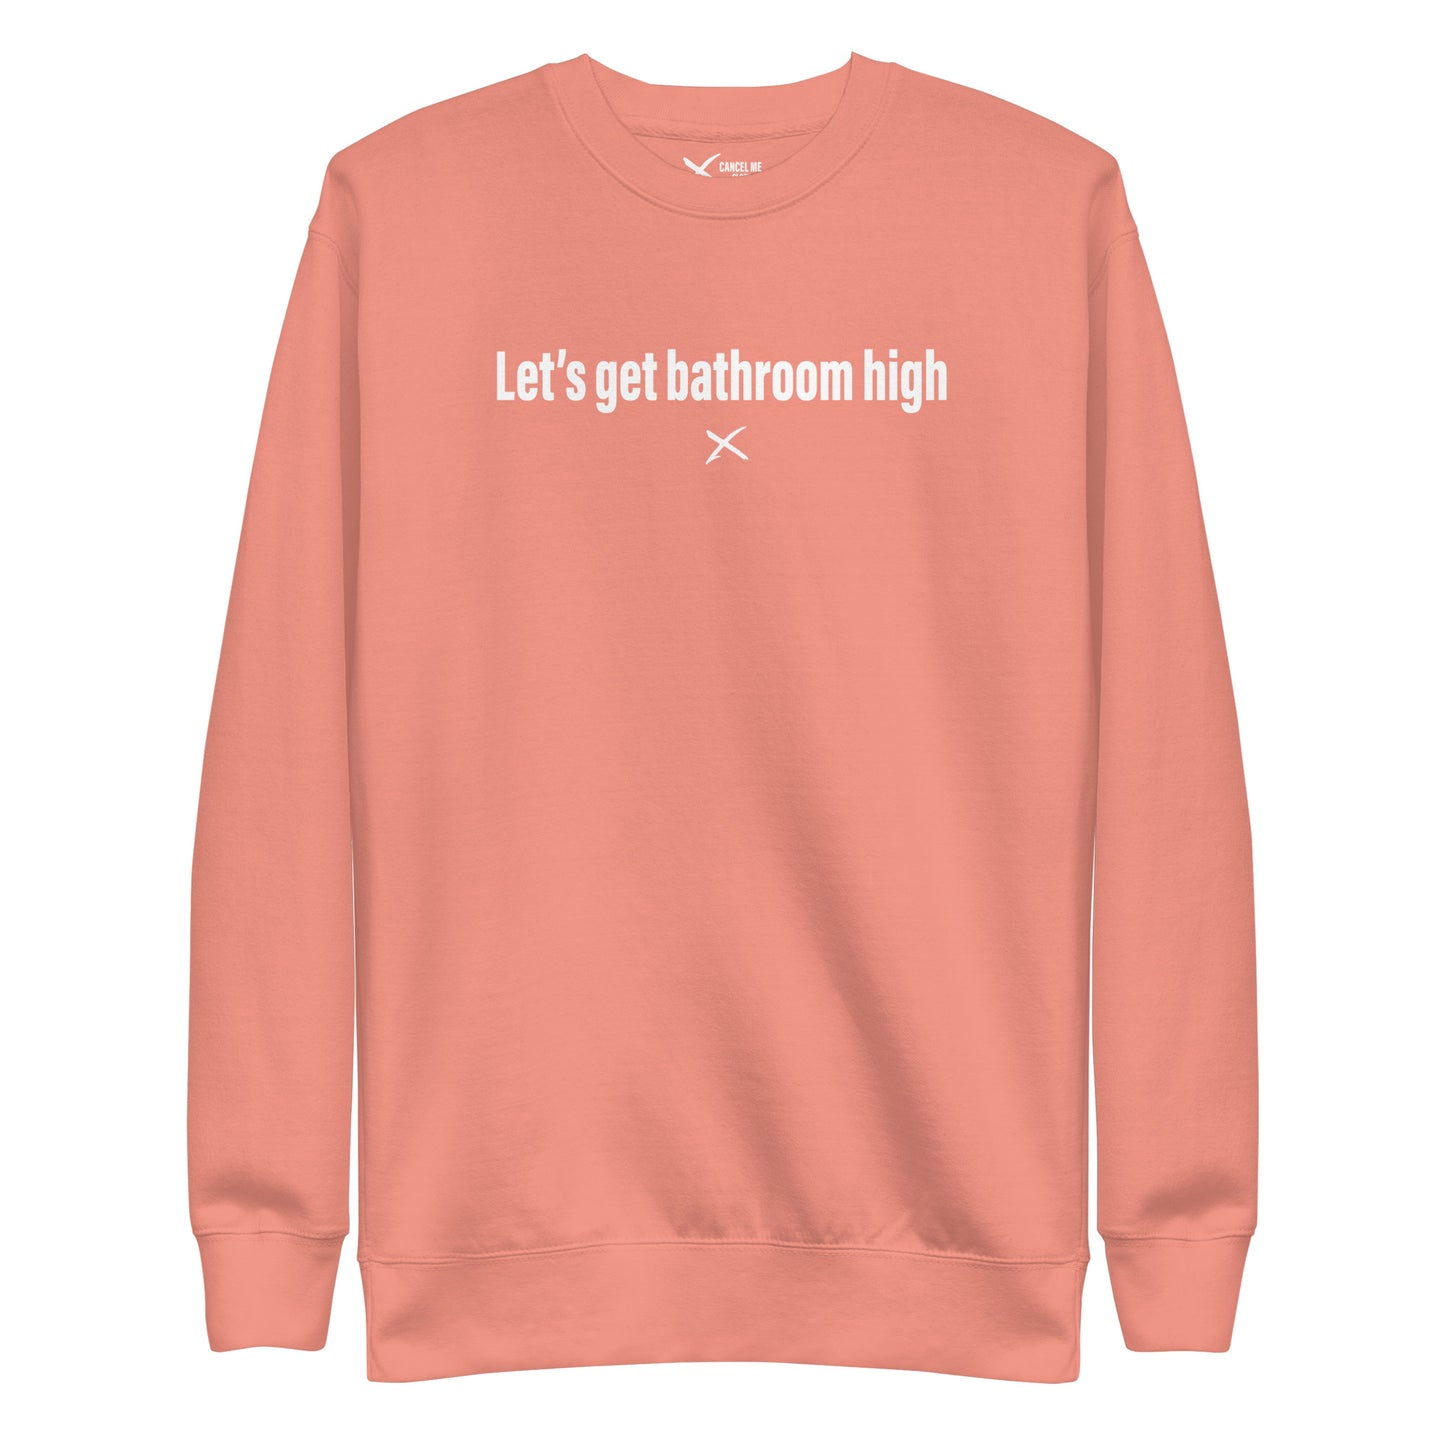 Let's get bathroom high - Sweatshirt